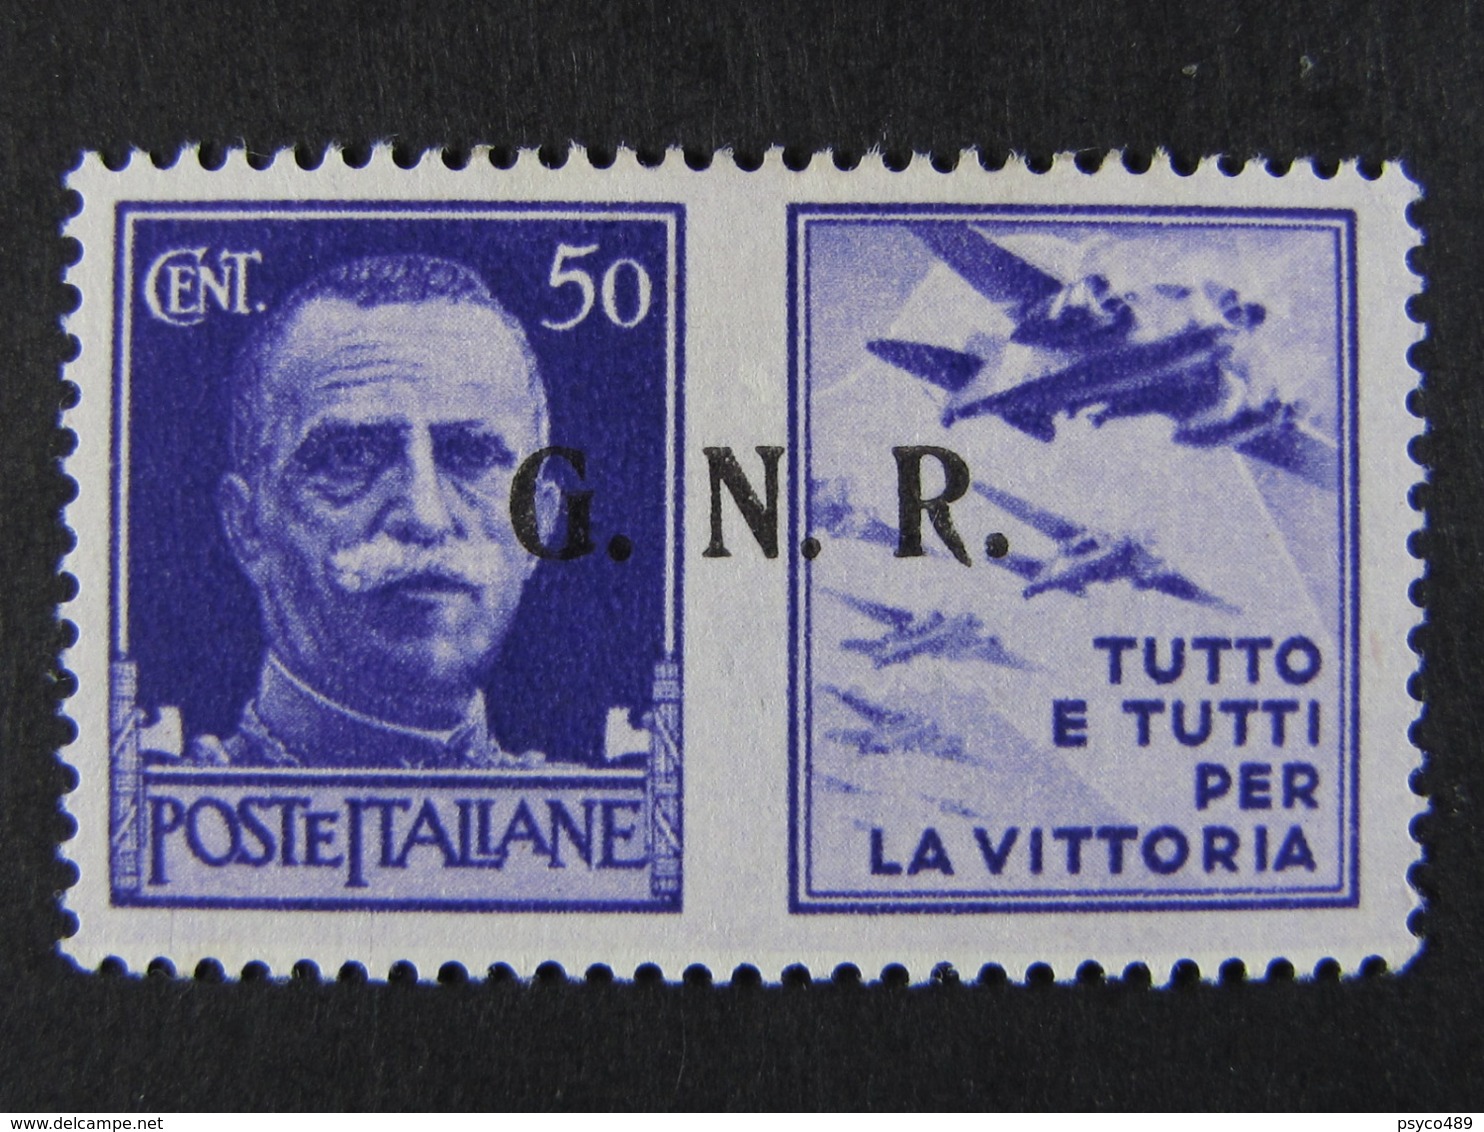 ITALIA-Italy -1944- Repubblica Sociale "Propaganda Di Guerra" C. 50 3* Tipo MH* (descrizione) - War Propaganda